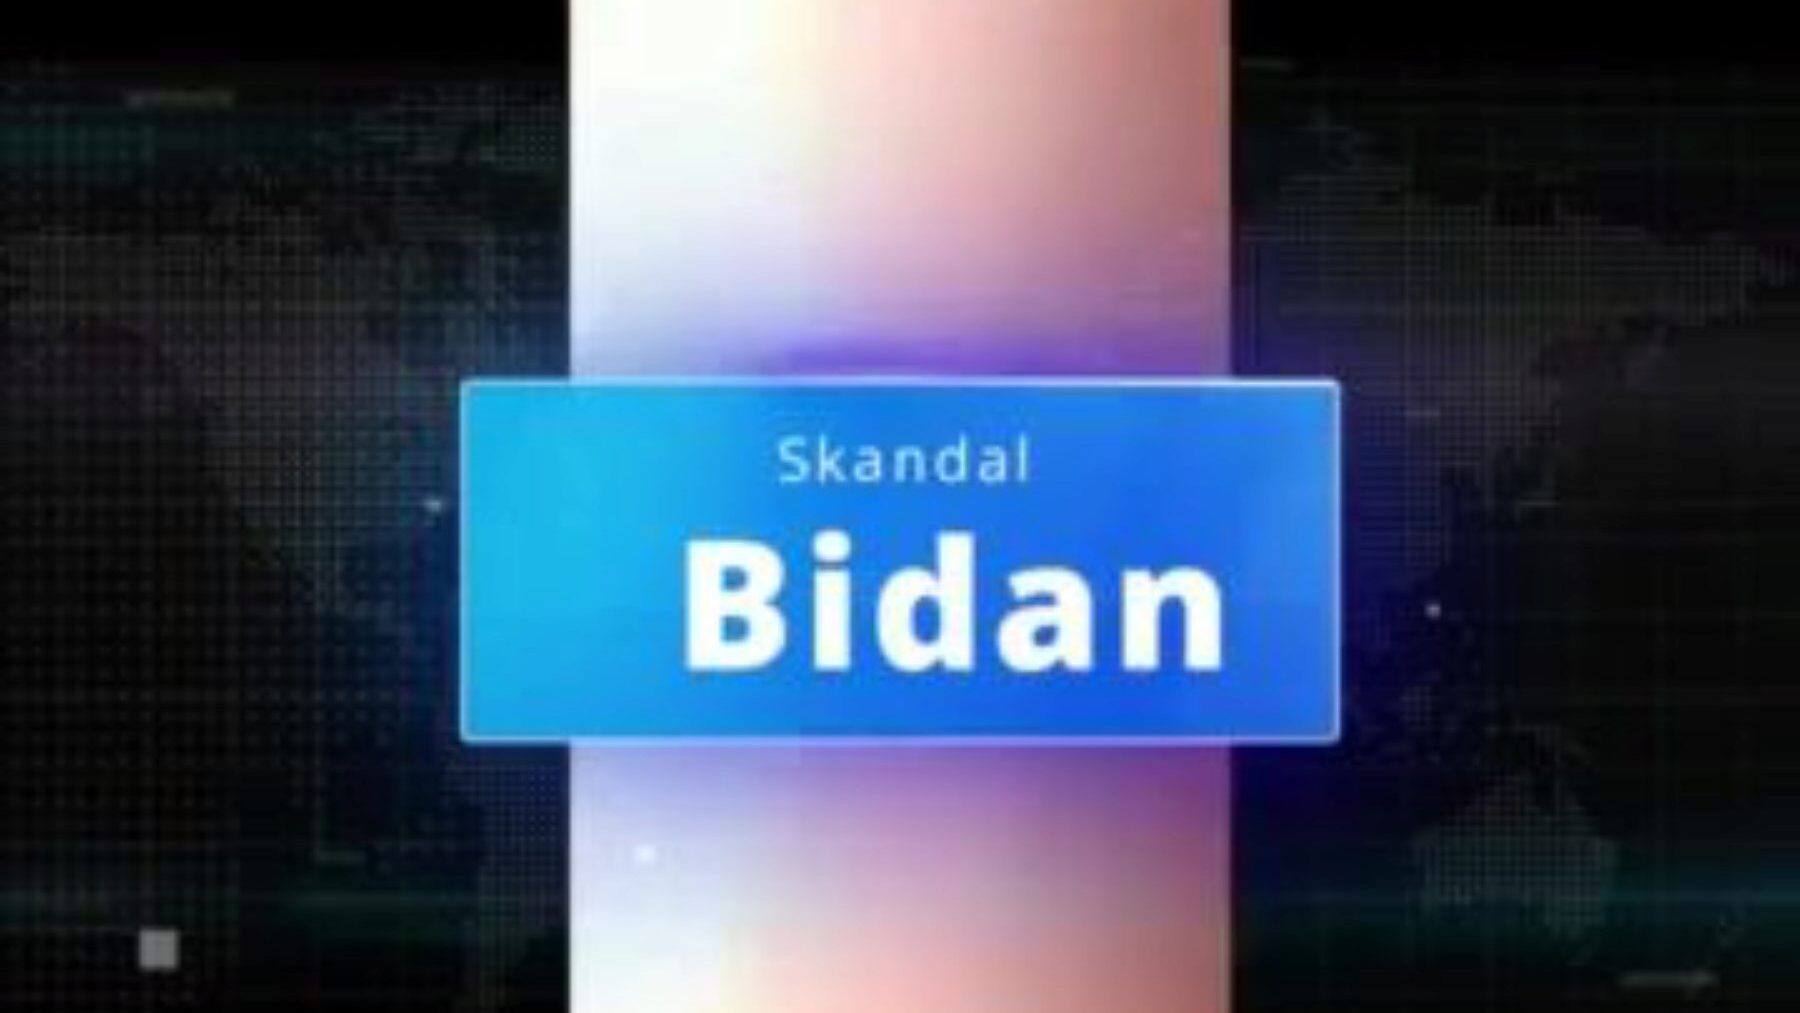 skandal bidan hijab: hijab xxx porno video 4f - xhamster guarda l'episodio di skandal bidan hijab tube fuckfest gratis per tutti su xhamster, con lo stuolo superiore di scene di film porno asiatiche indonesiane, hijab xxx e xxx hijab